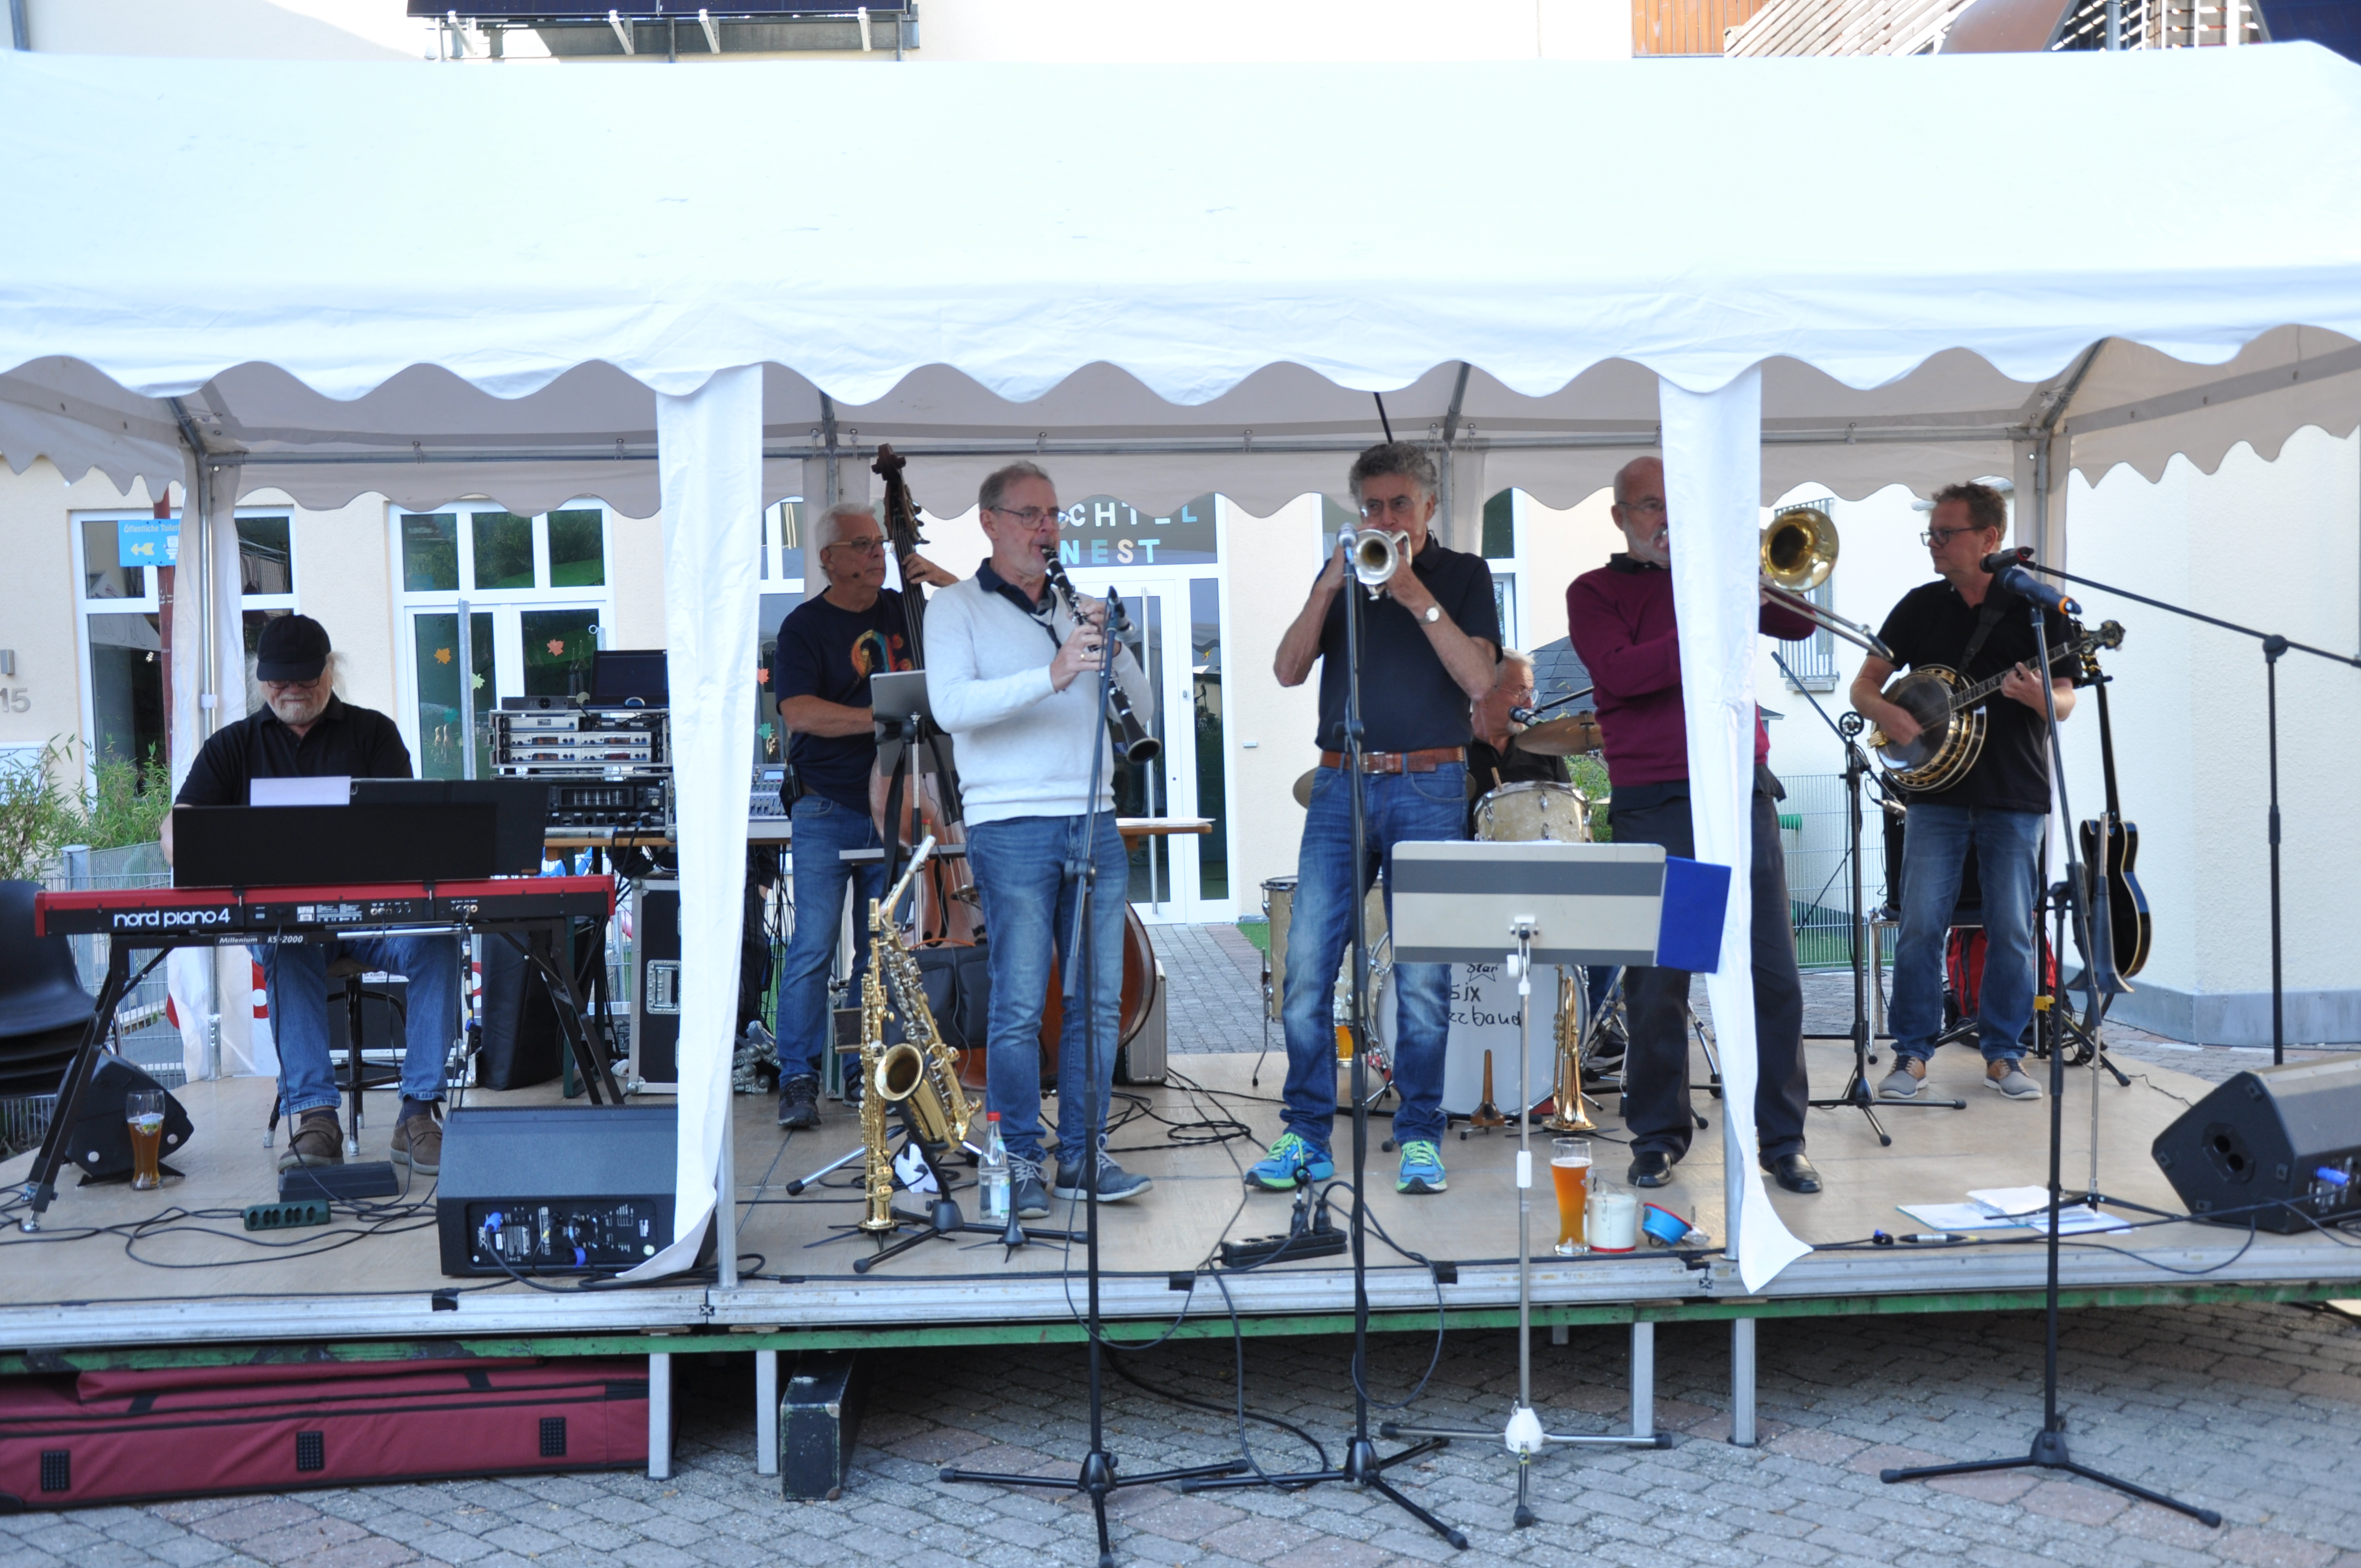  Die Jazz-Formation Hot Six spielte auf dem Malzéviller Platz. 